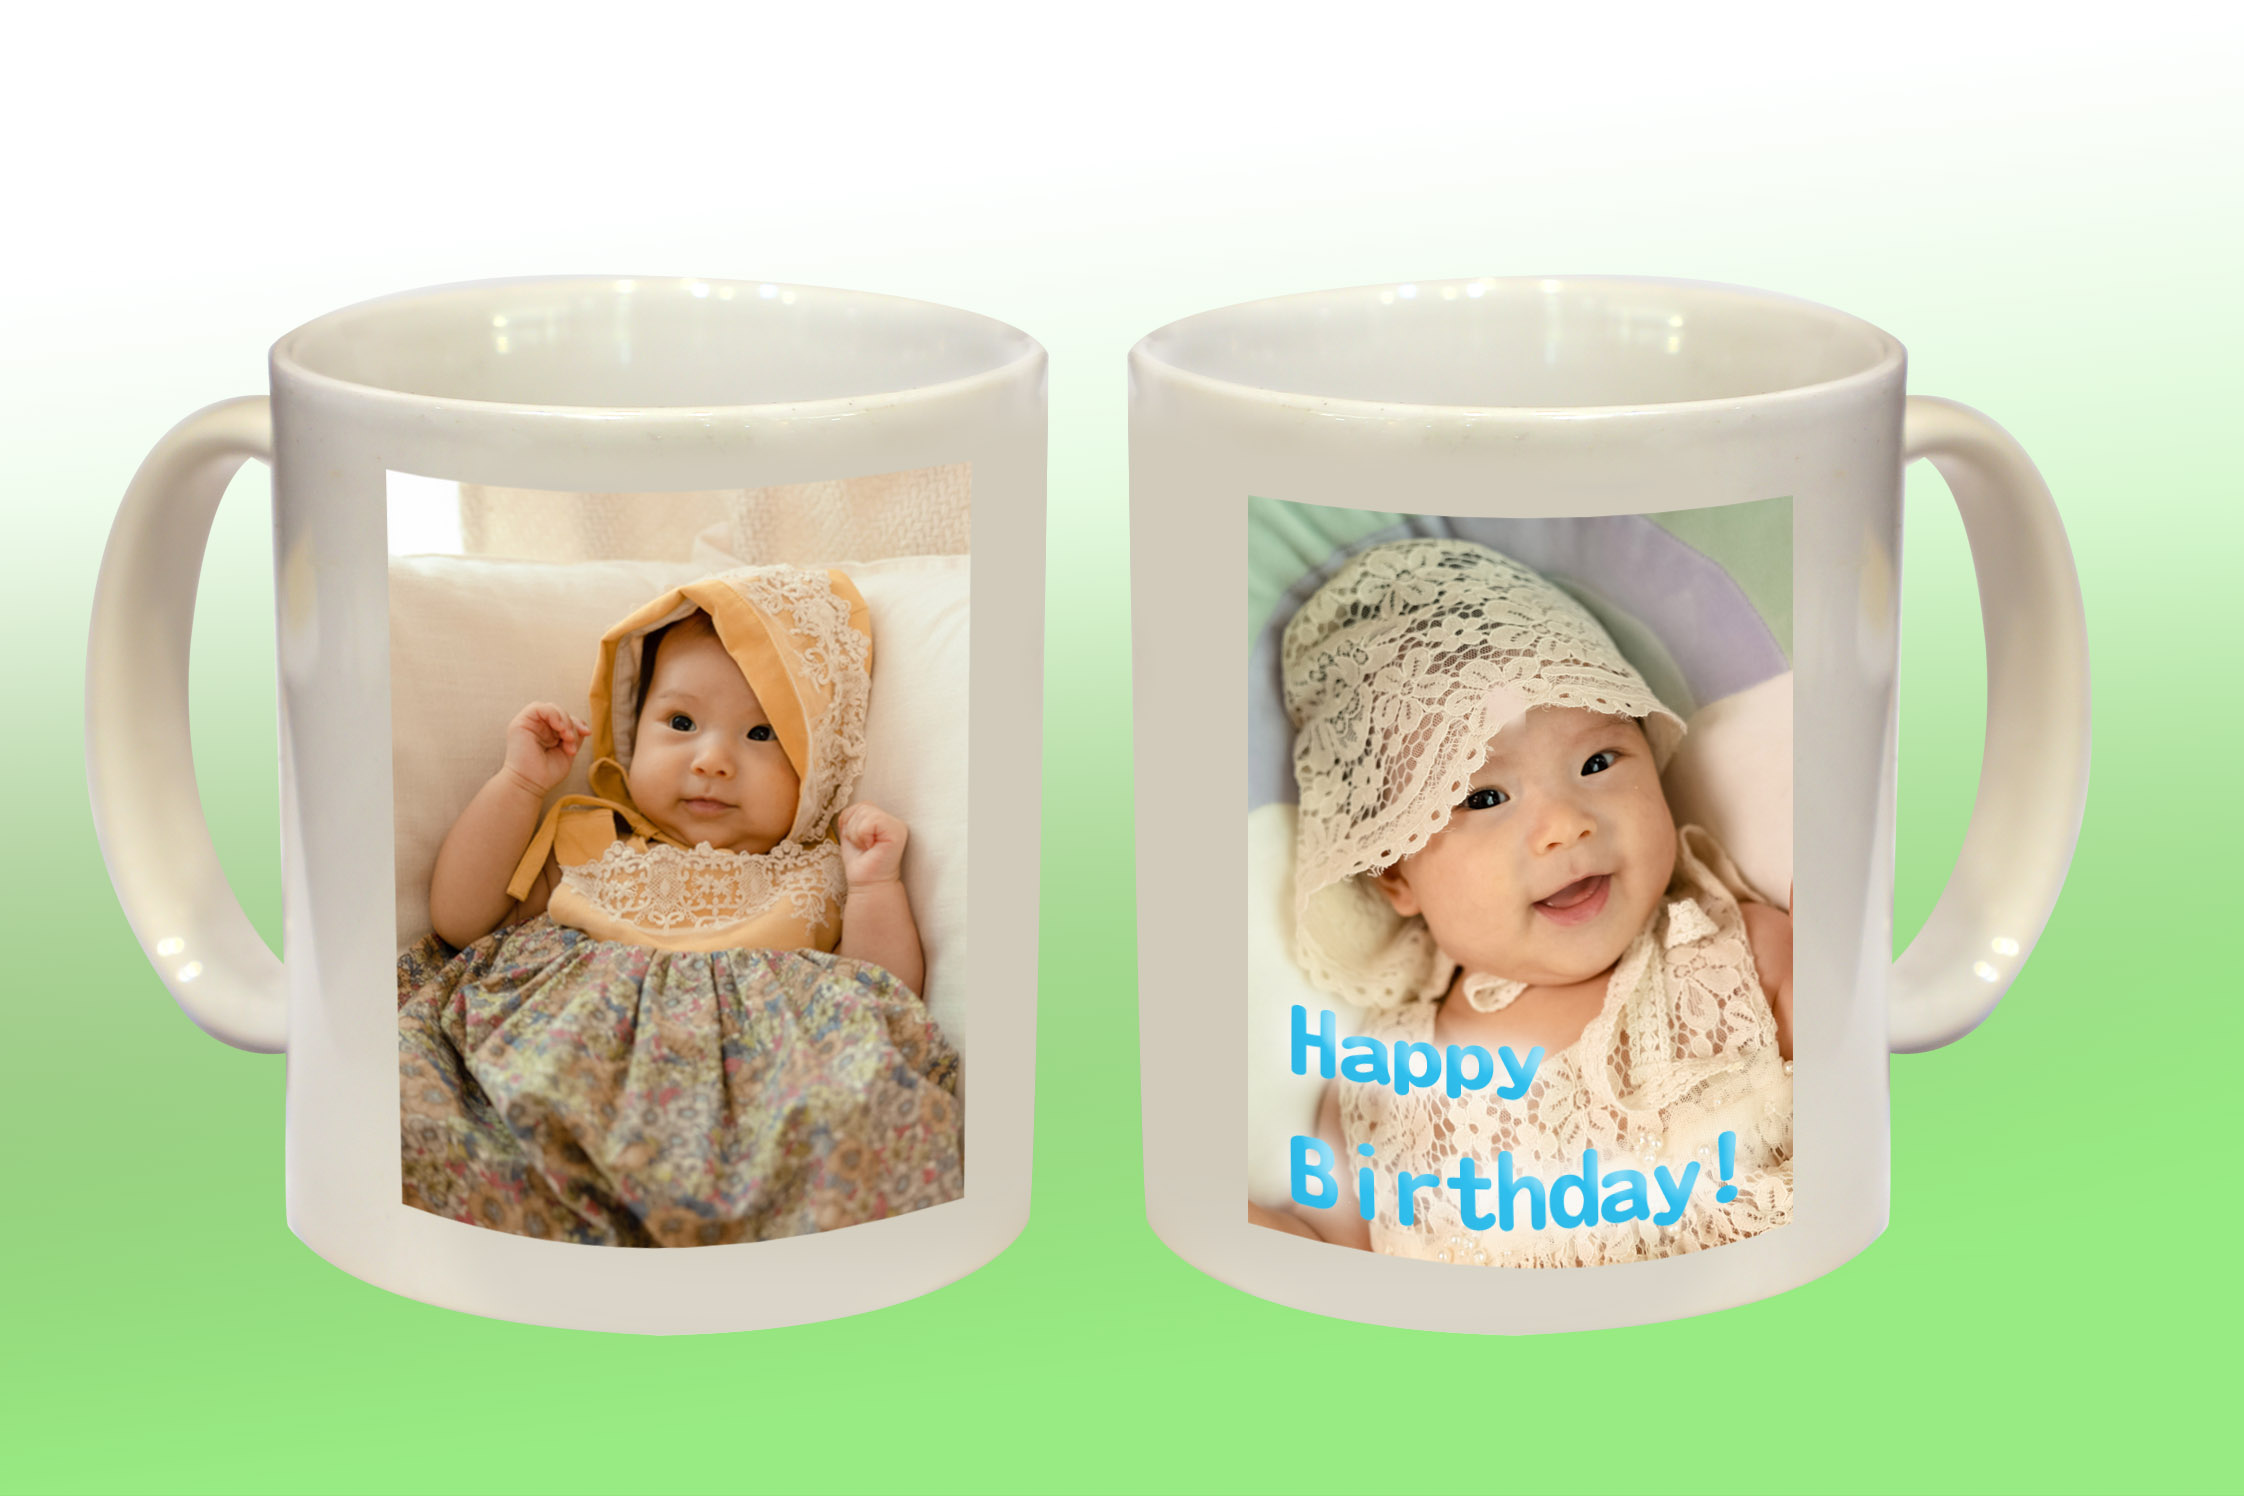 Mugs (two Image files + wording) 